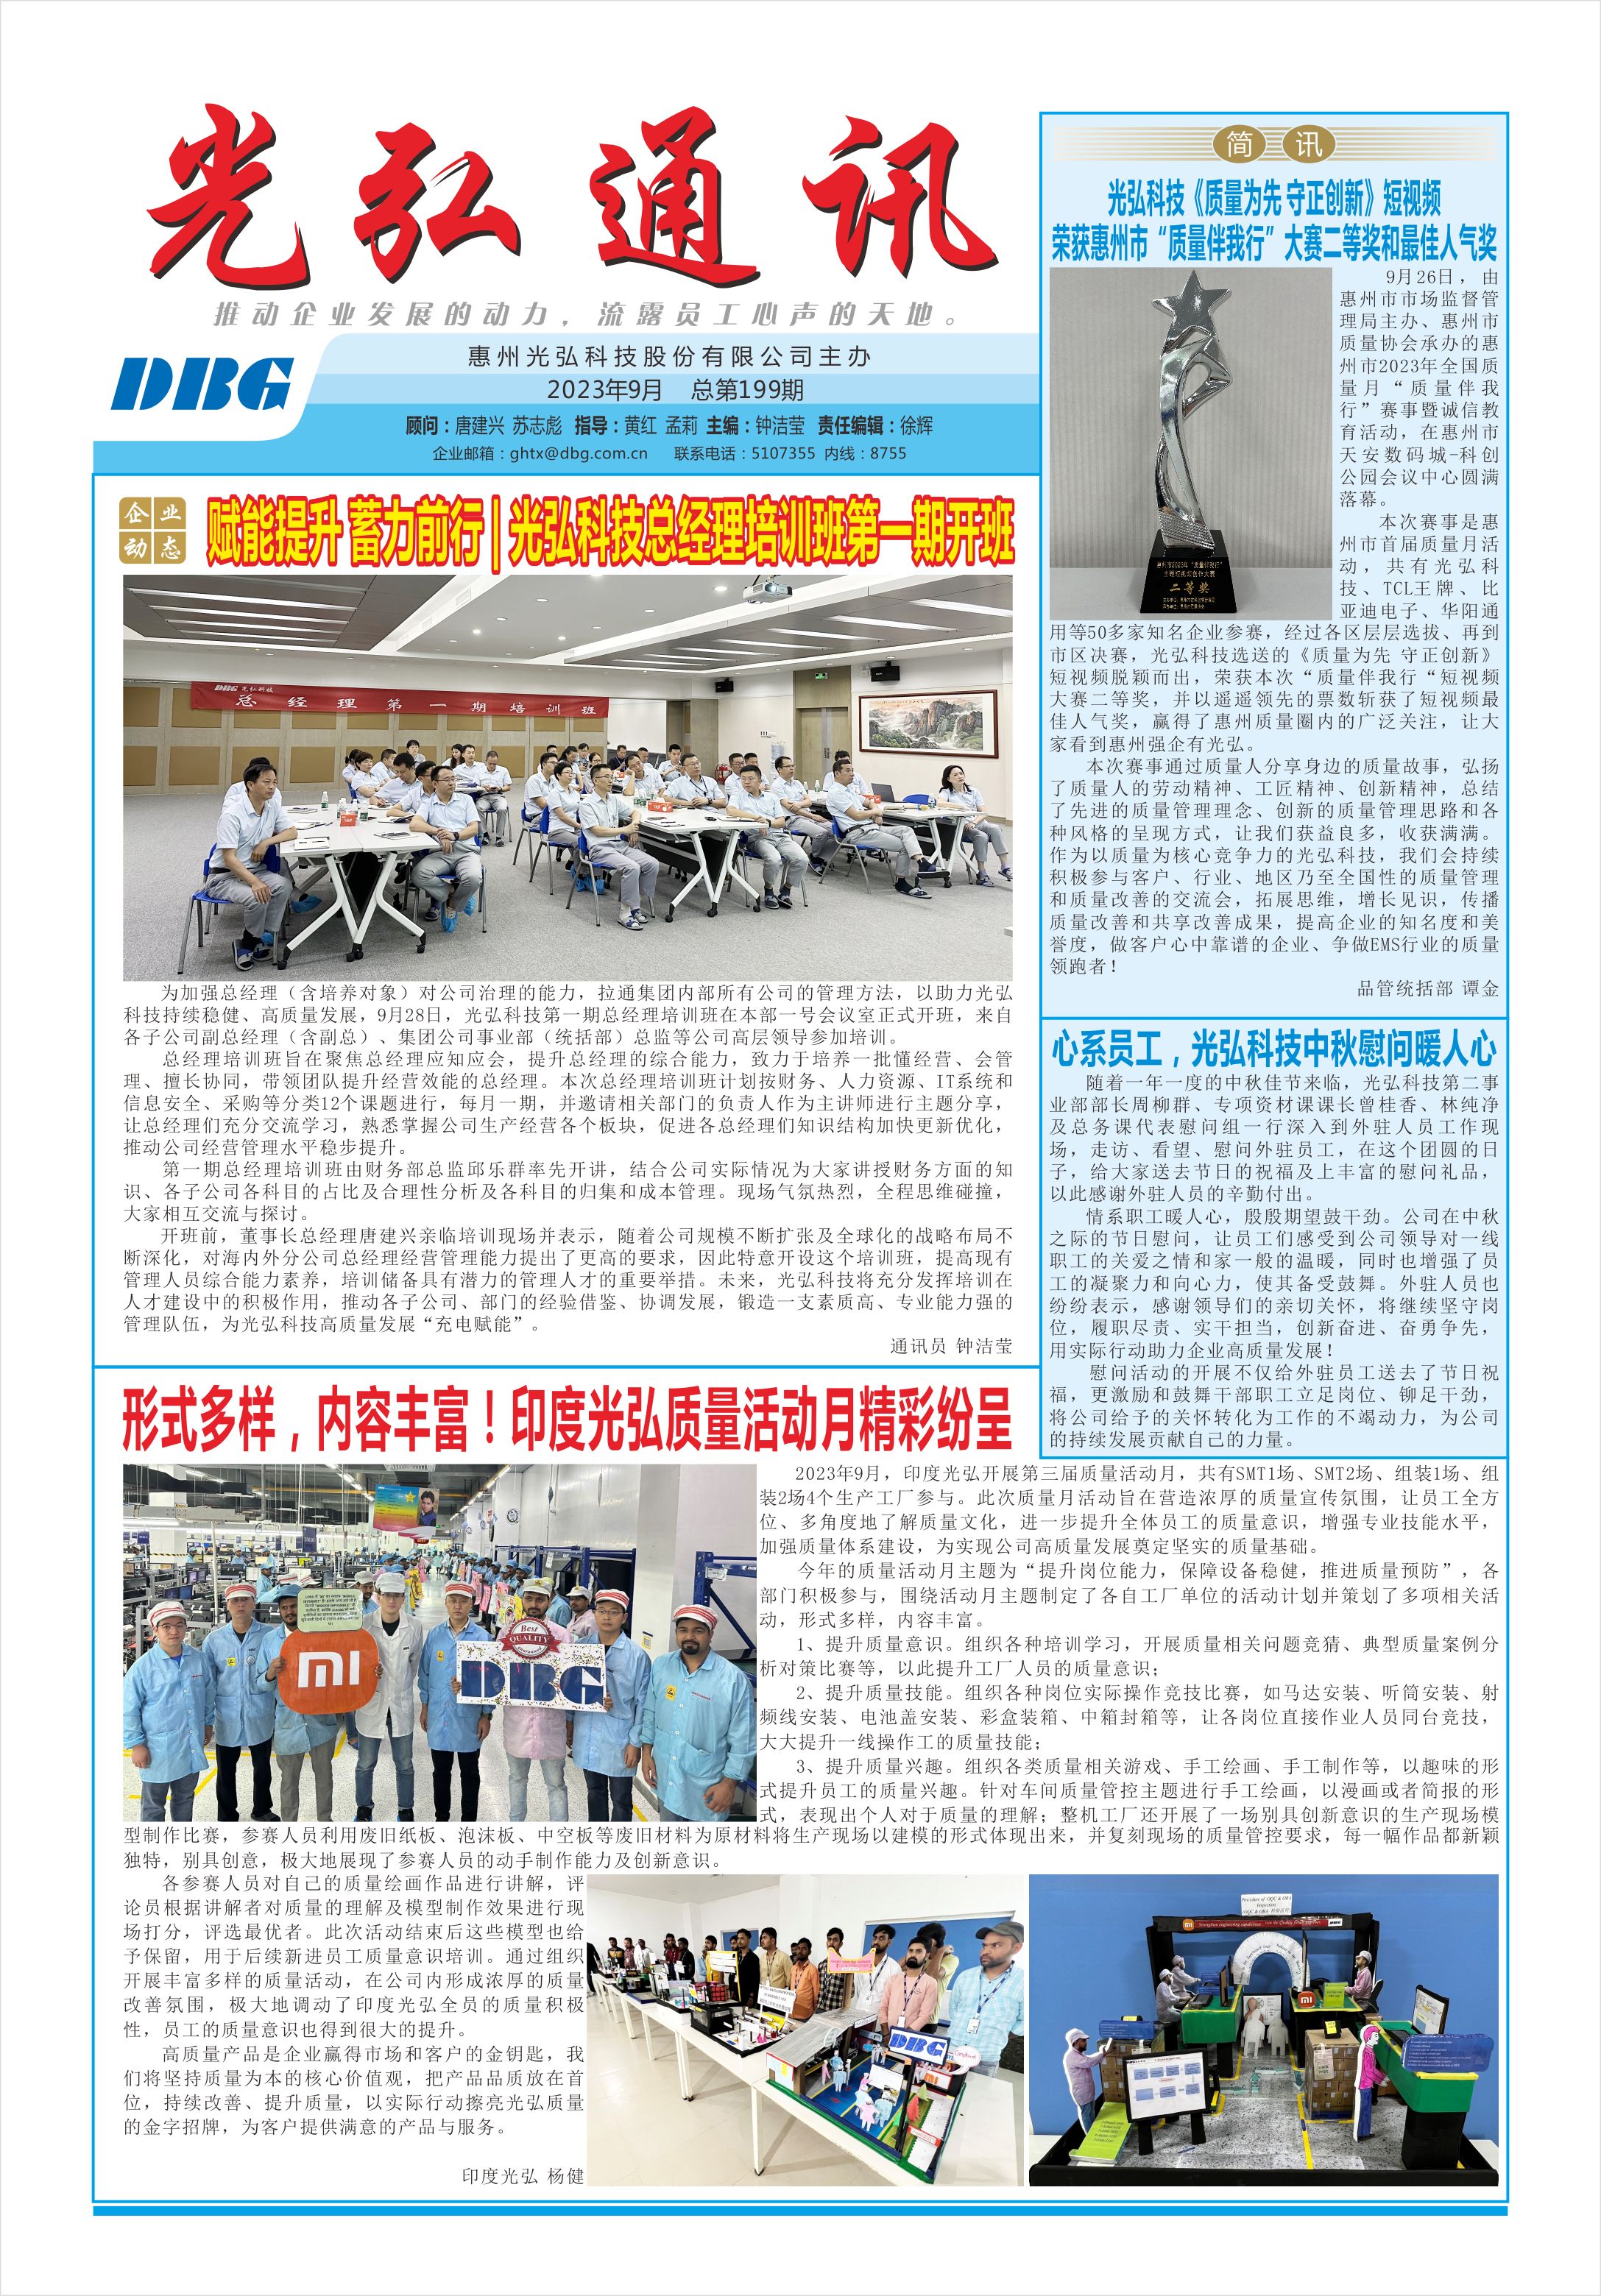 光弘通讯——199期 1 - DBG press No.199